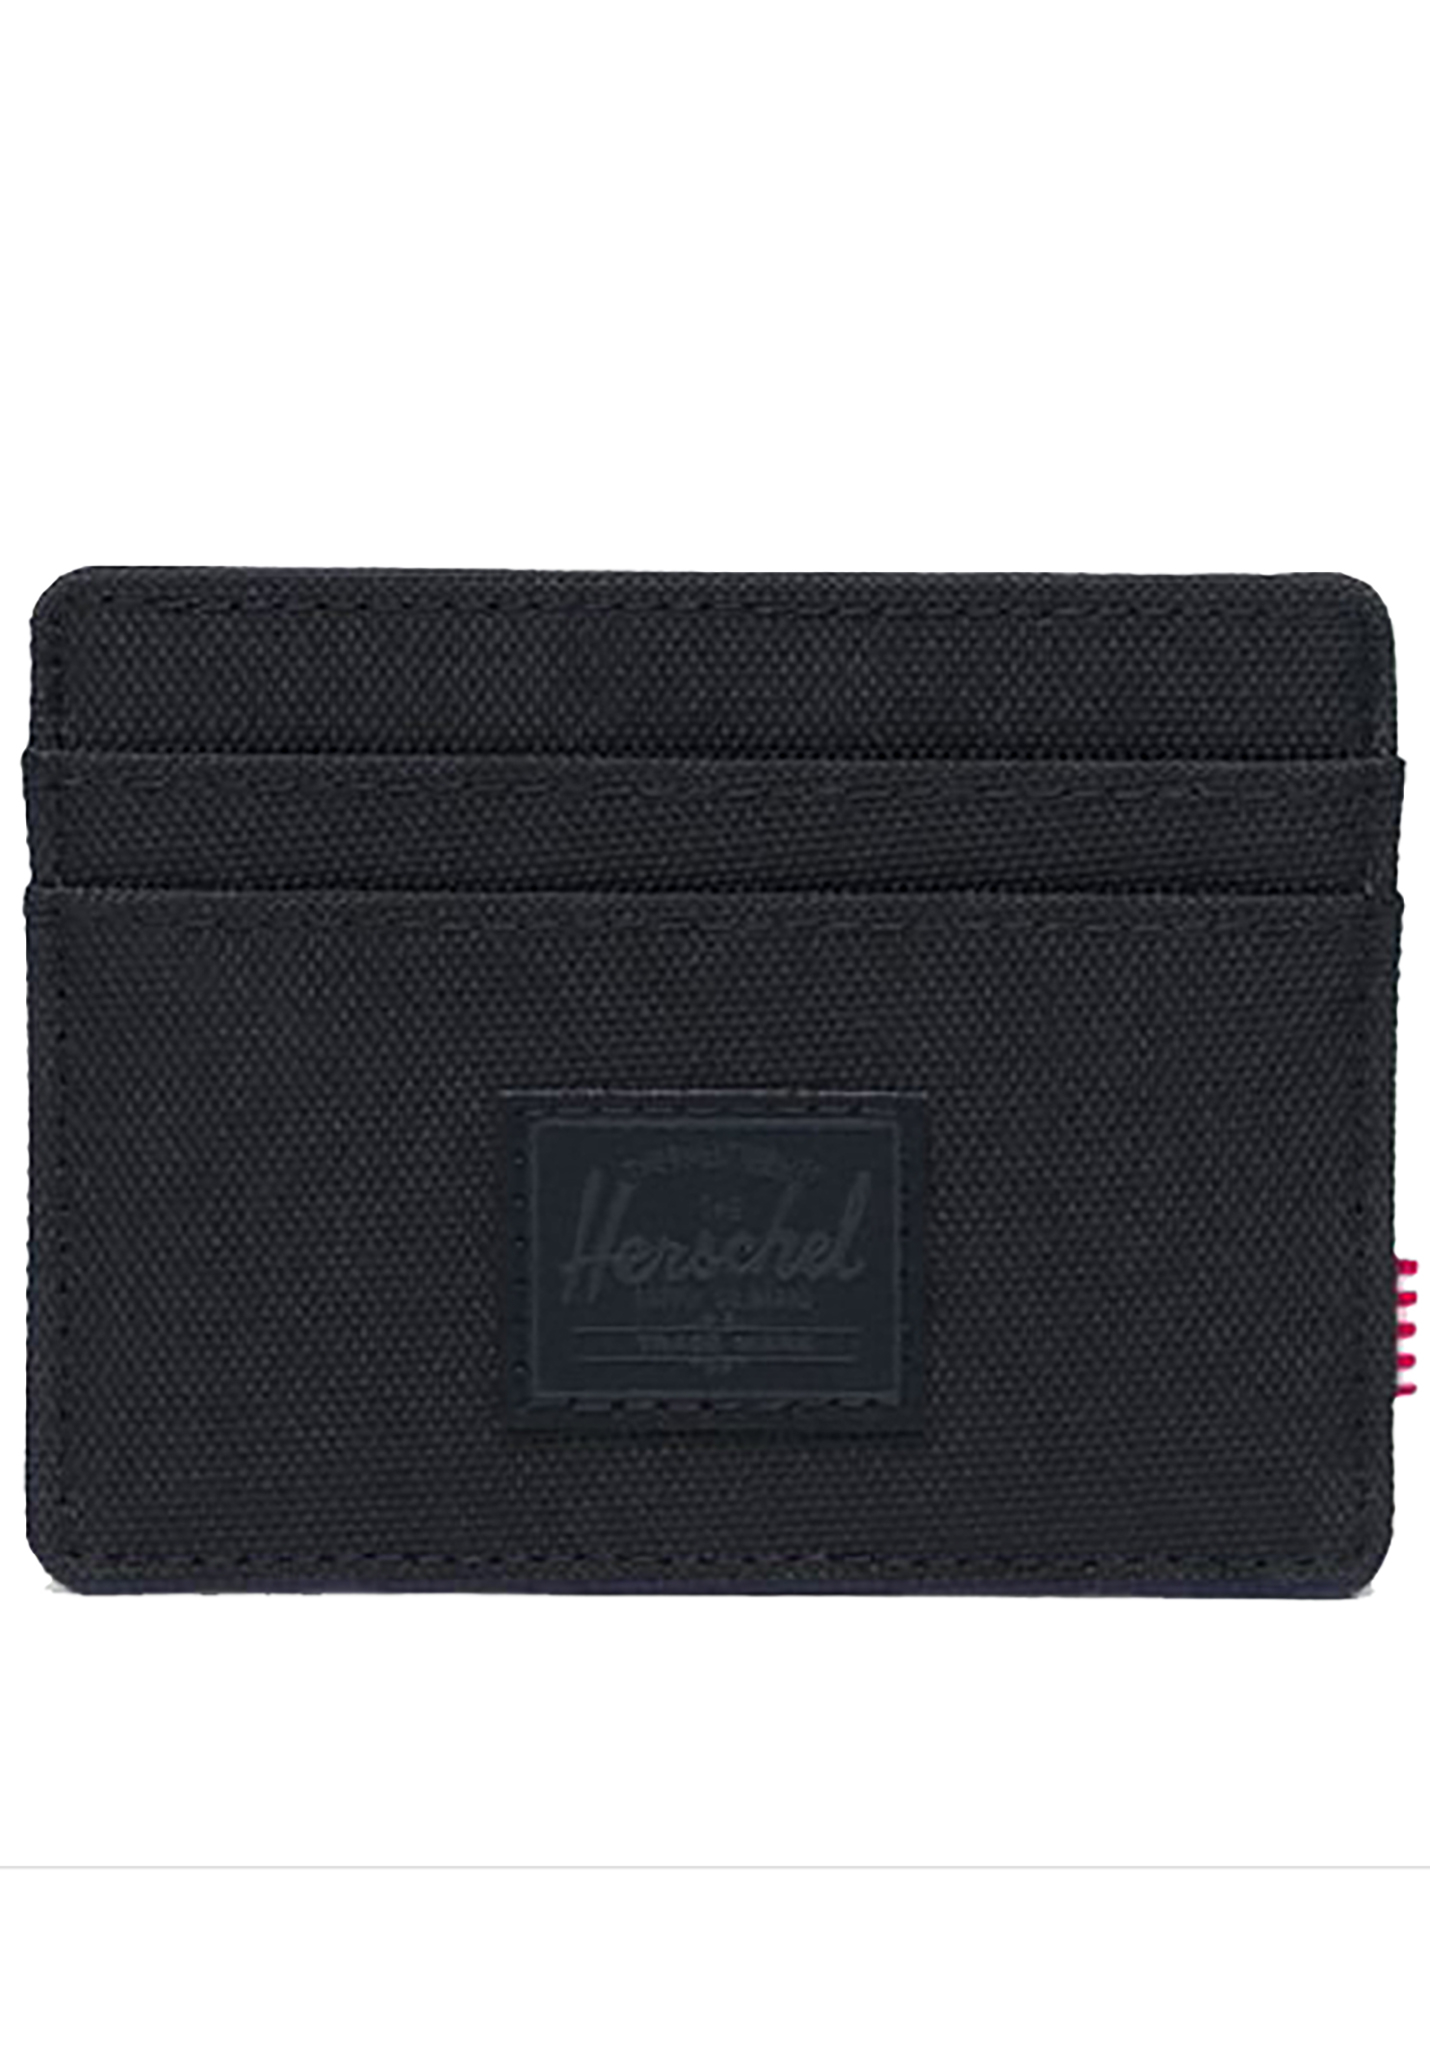 Herschel Supply Co. Charlie RFID Portemonnaie black/black One Size